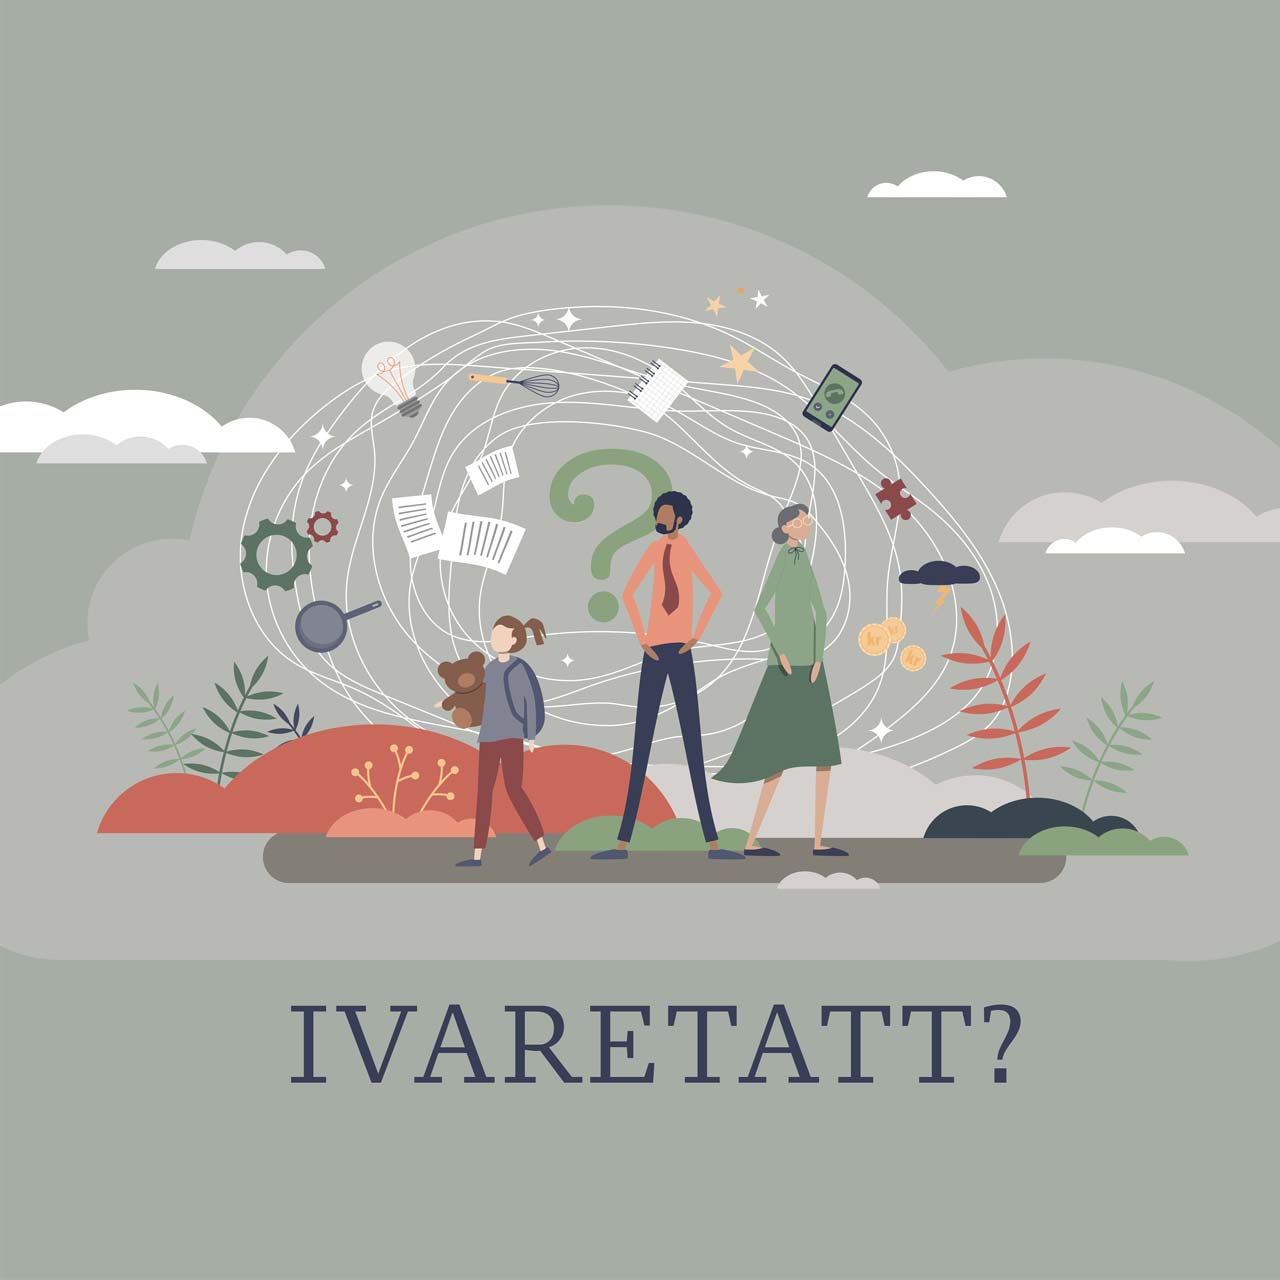 Plakatbilde for pårørendeundersøkelsen "Ivaretatt". Grafikk.